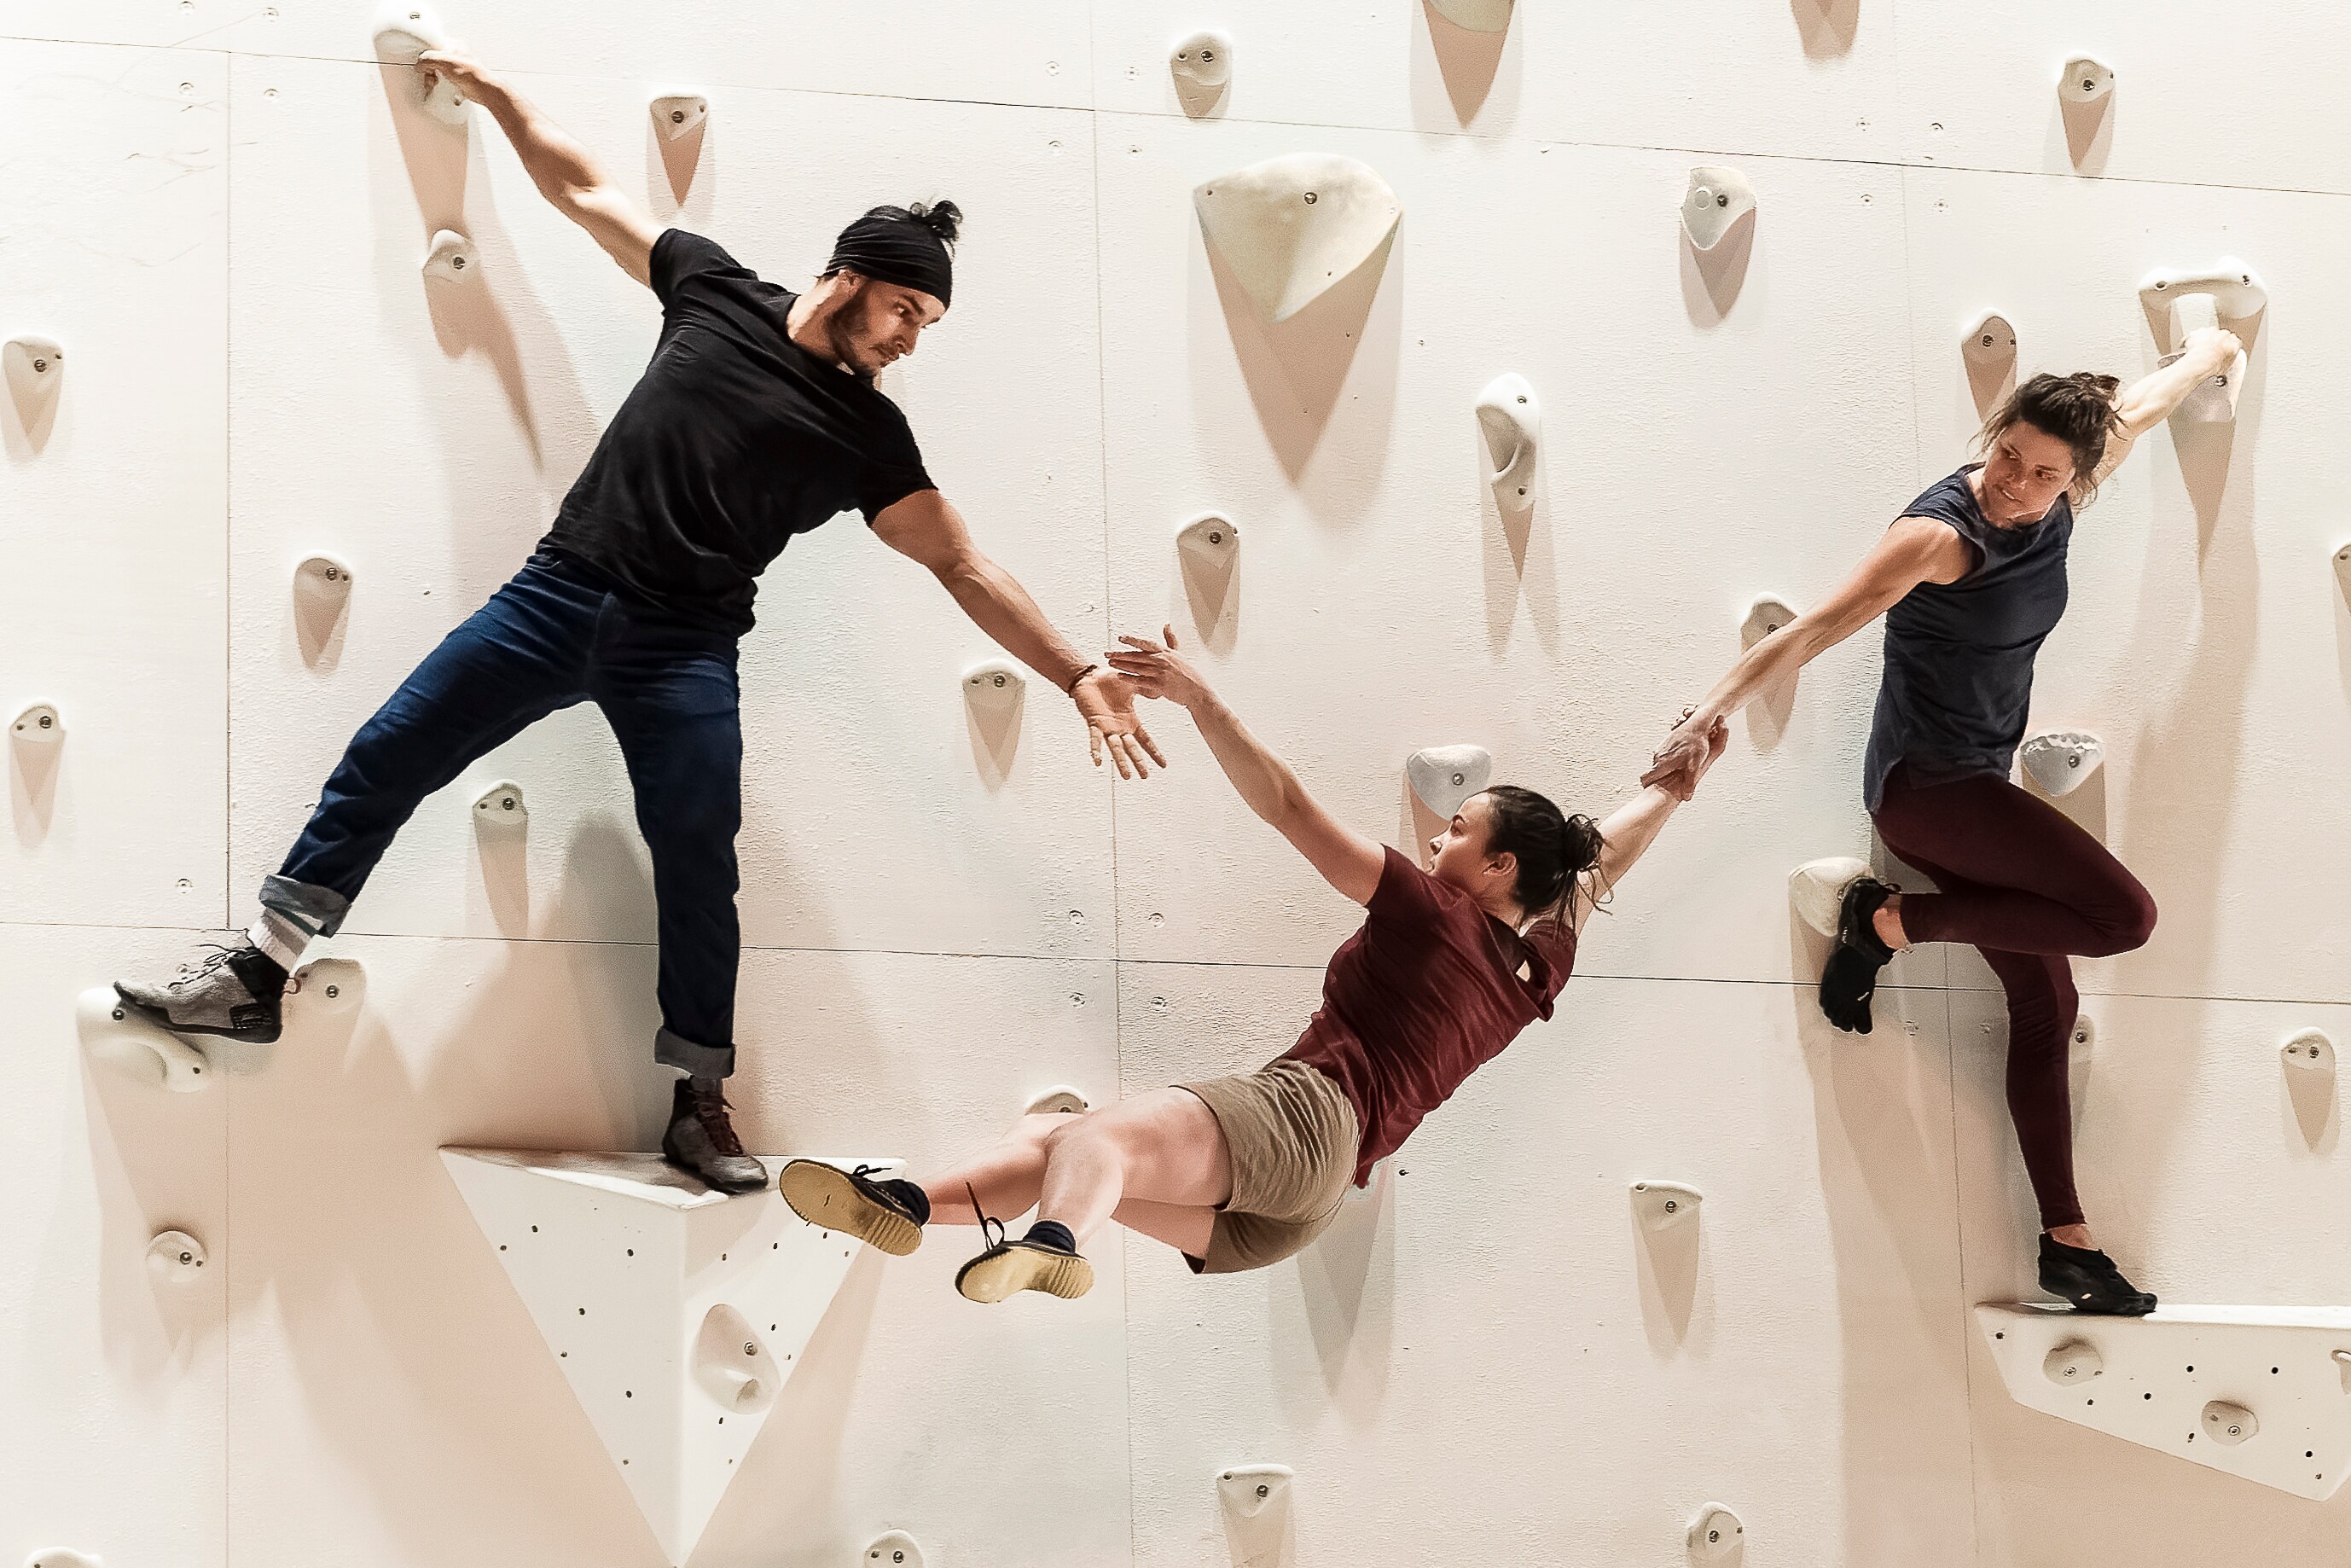 Deux danseurs escaladant un mur blanc en tenant un danseur en l’air